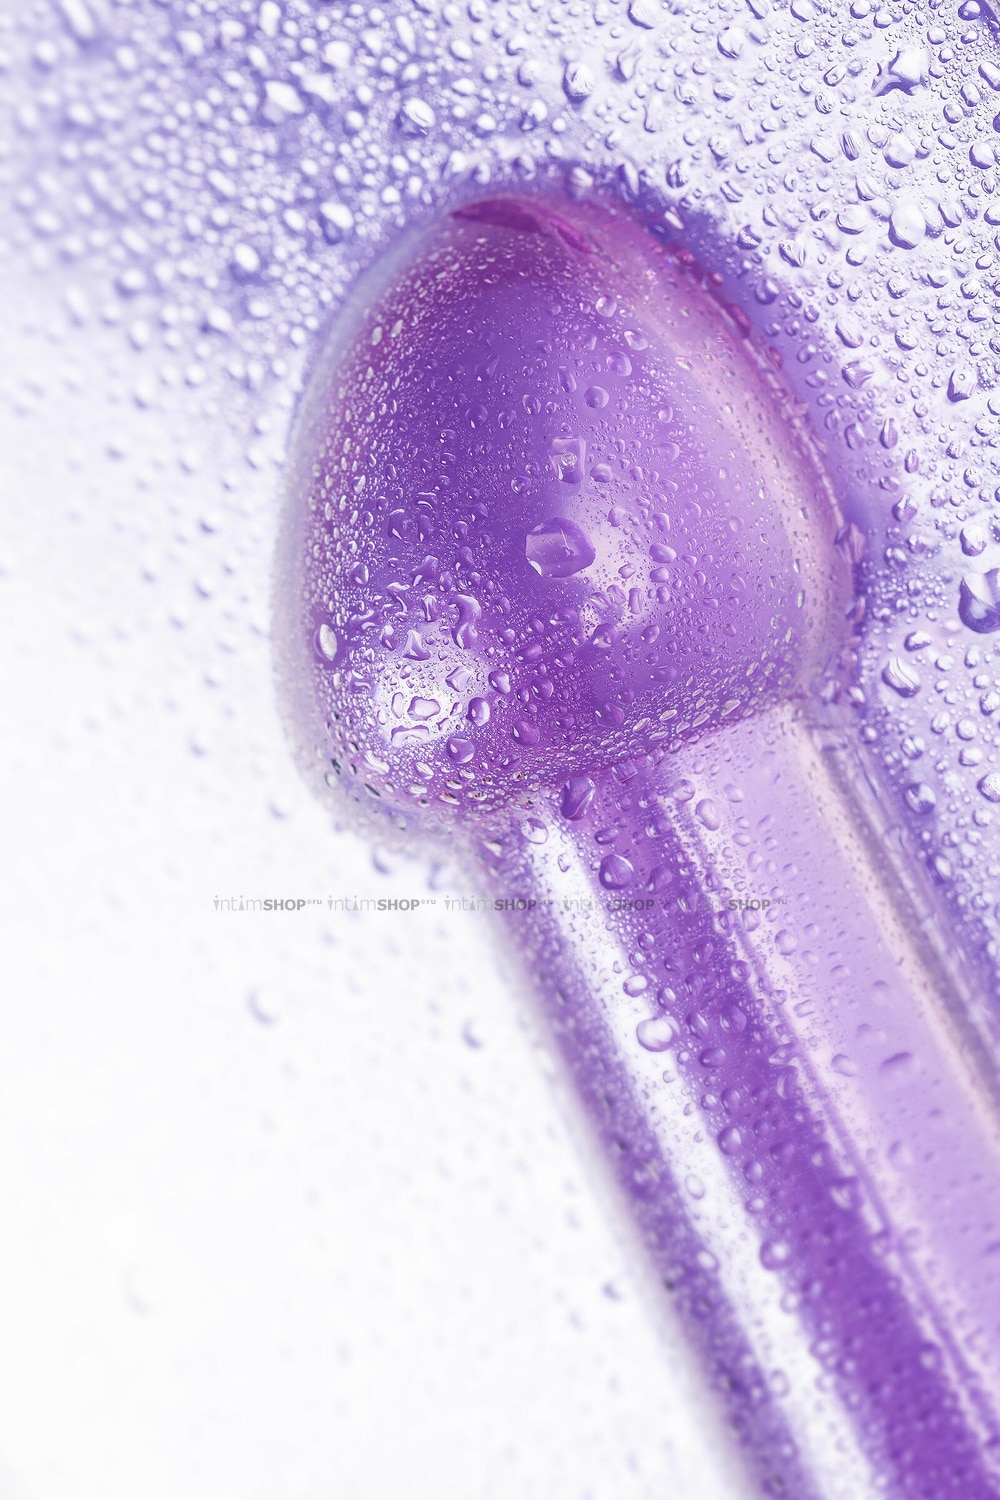 Фаллоимитатор Toyfa Jelly Dildo S на присоске 15.5 см, фиолетовый